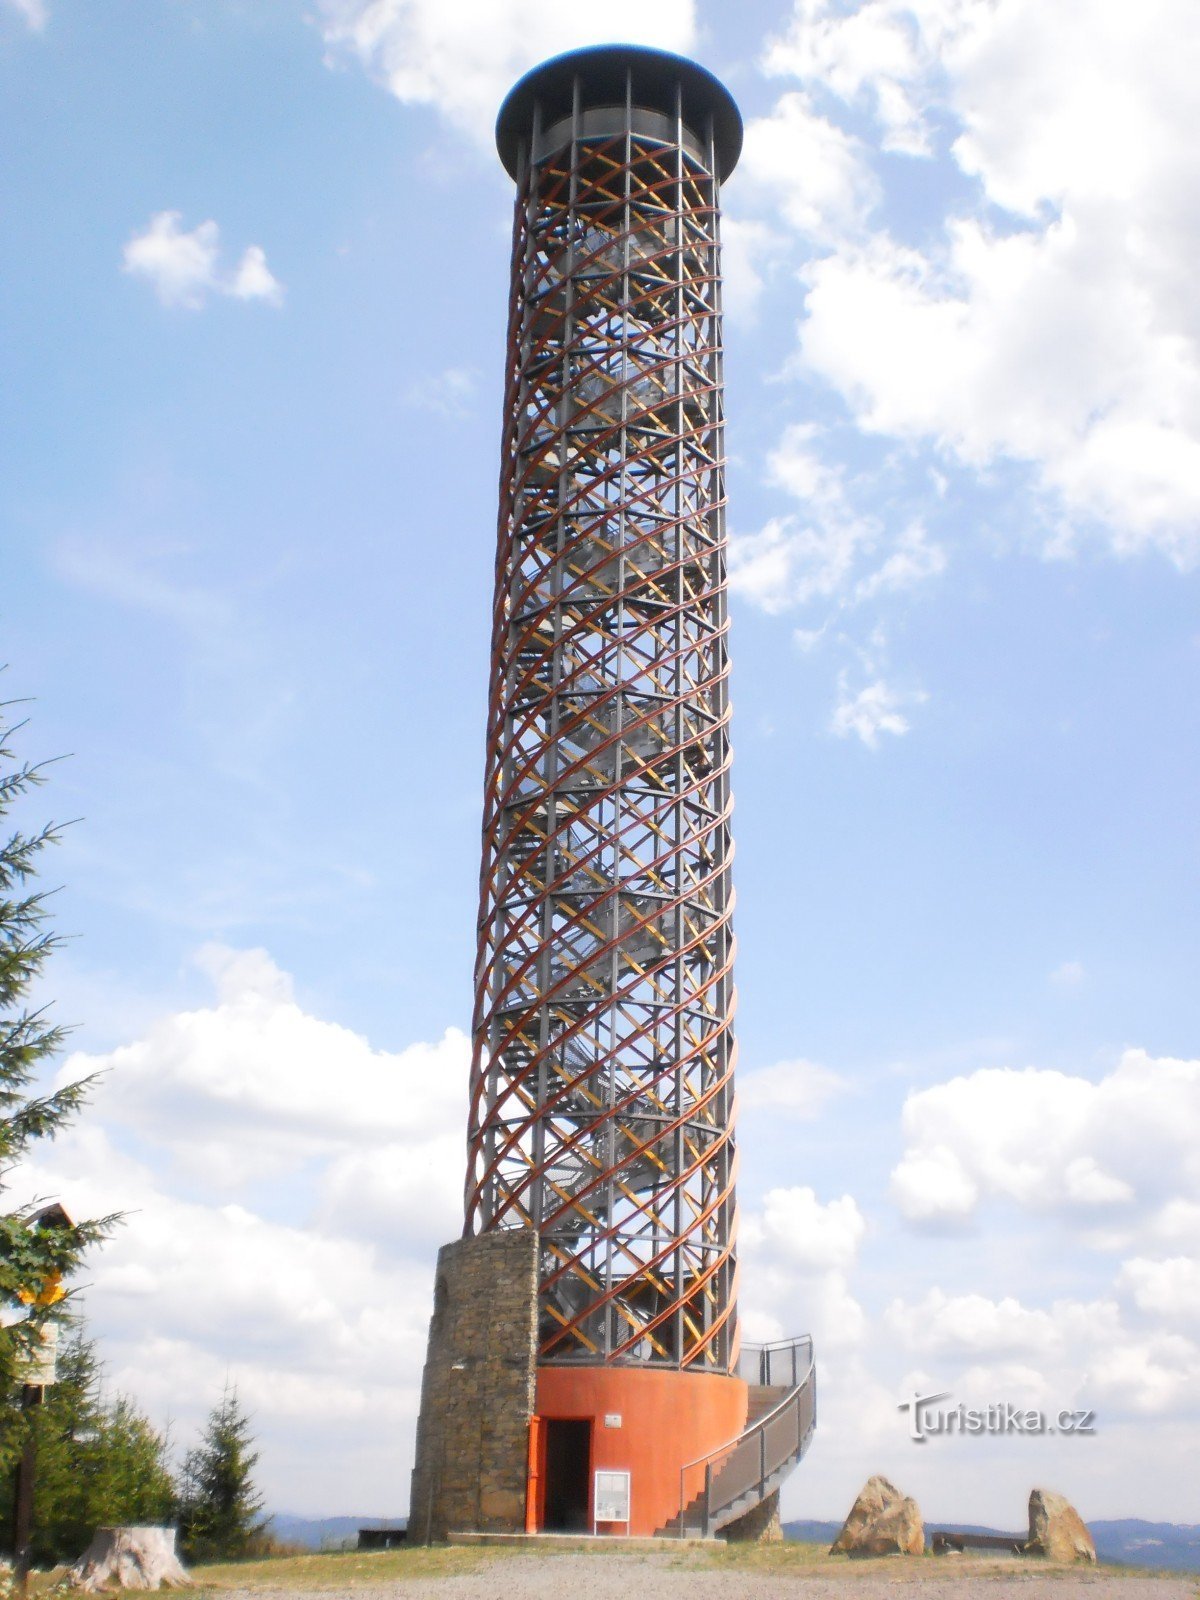 ヴァルトヴナの見張り塔